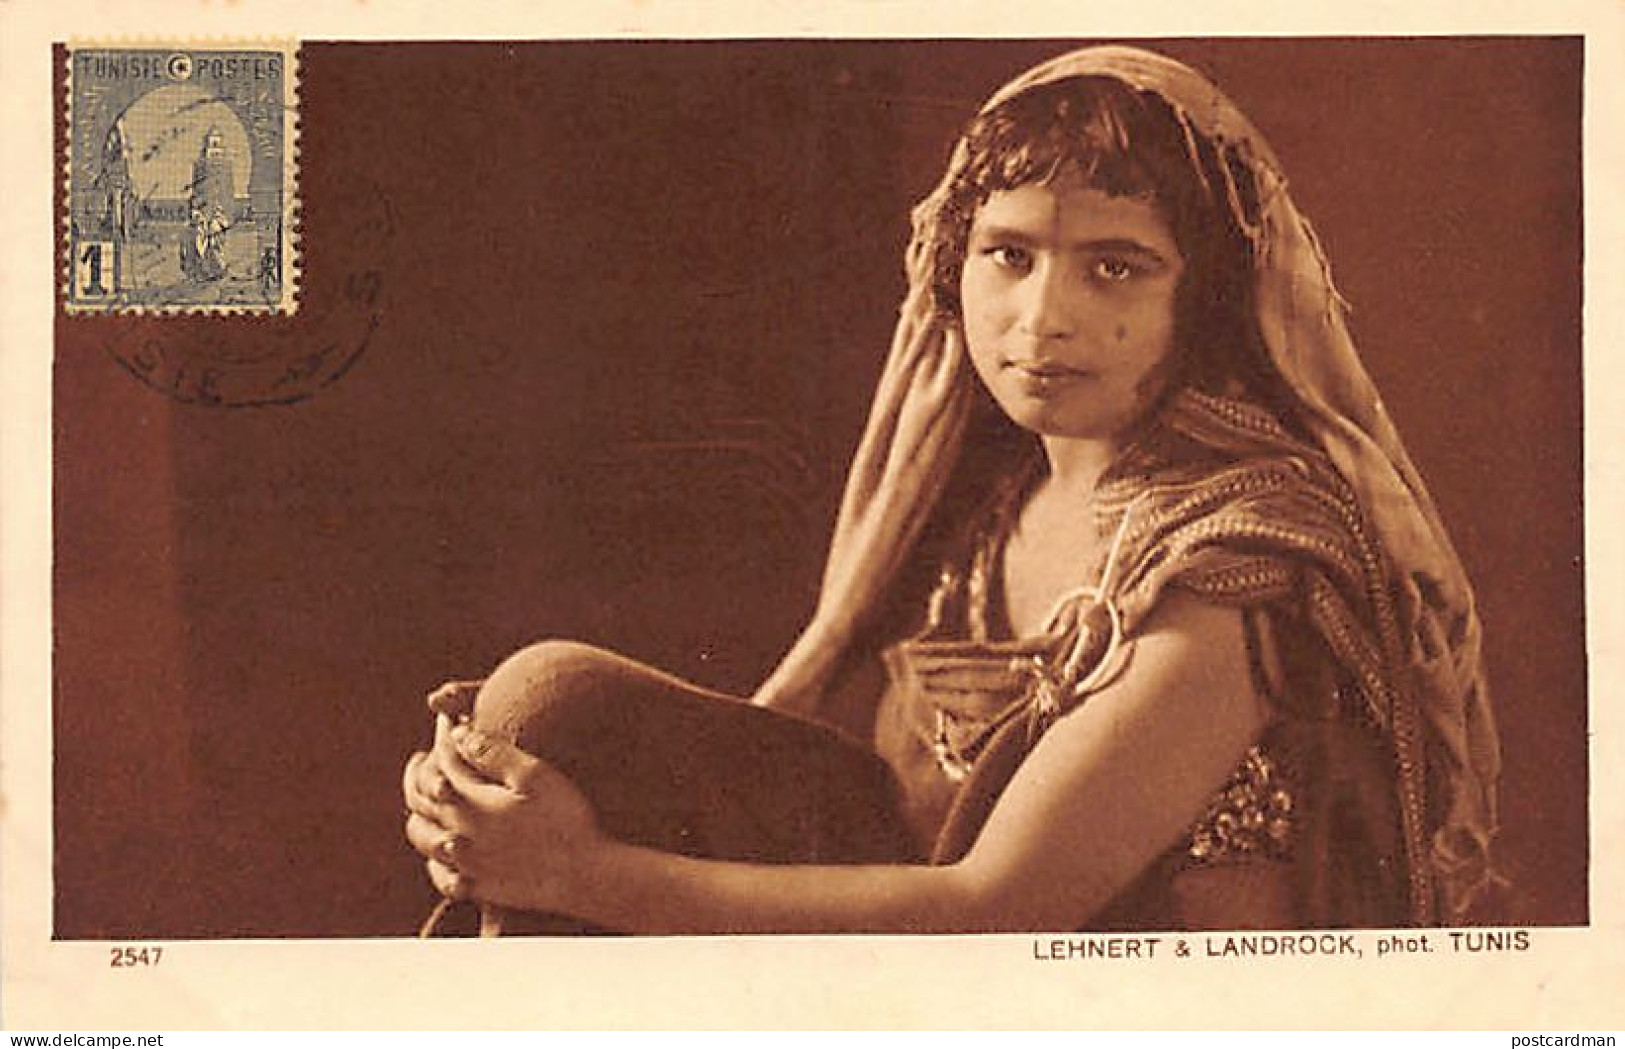 TUNISIE - Types D'Orient - Femme Du Sud - Ed. Lehnert & Landrock Série III N. 2547 - Tunisie